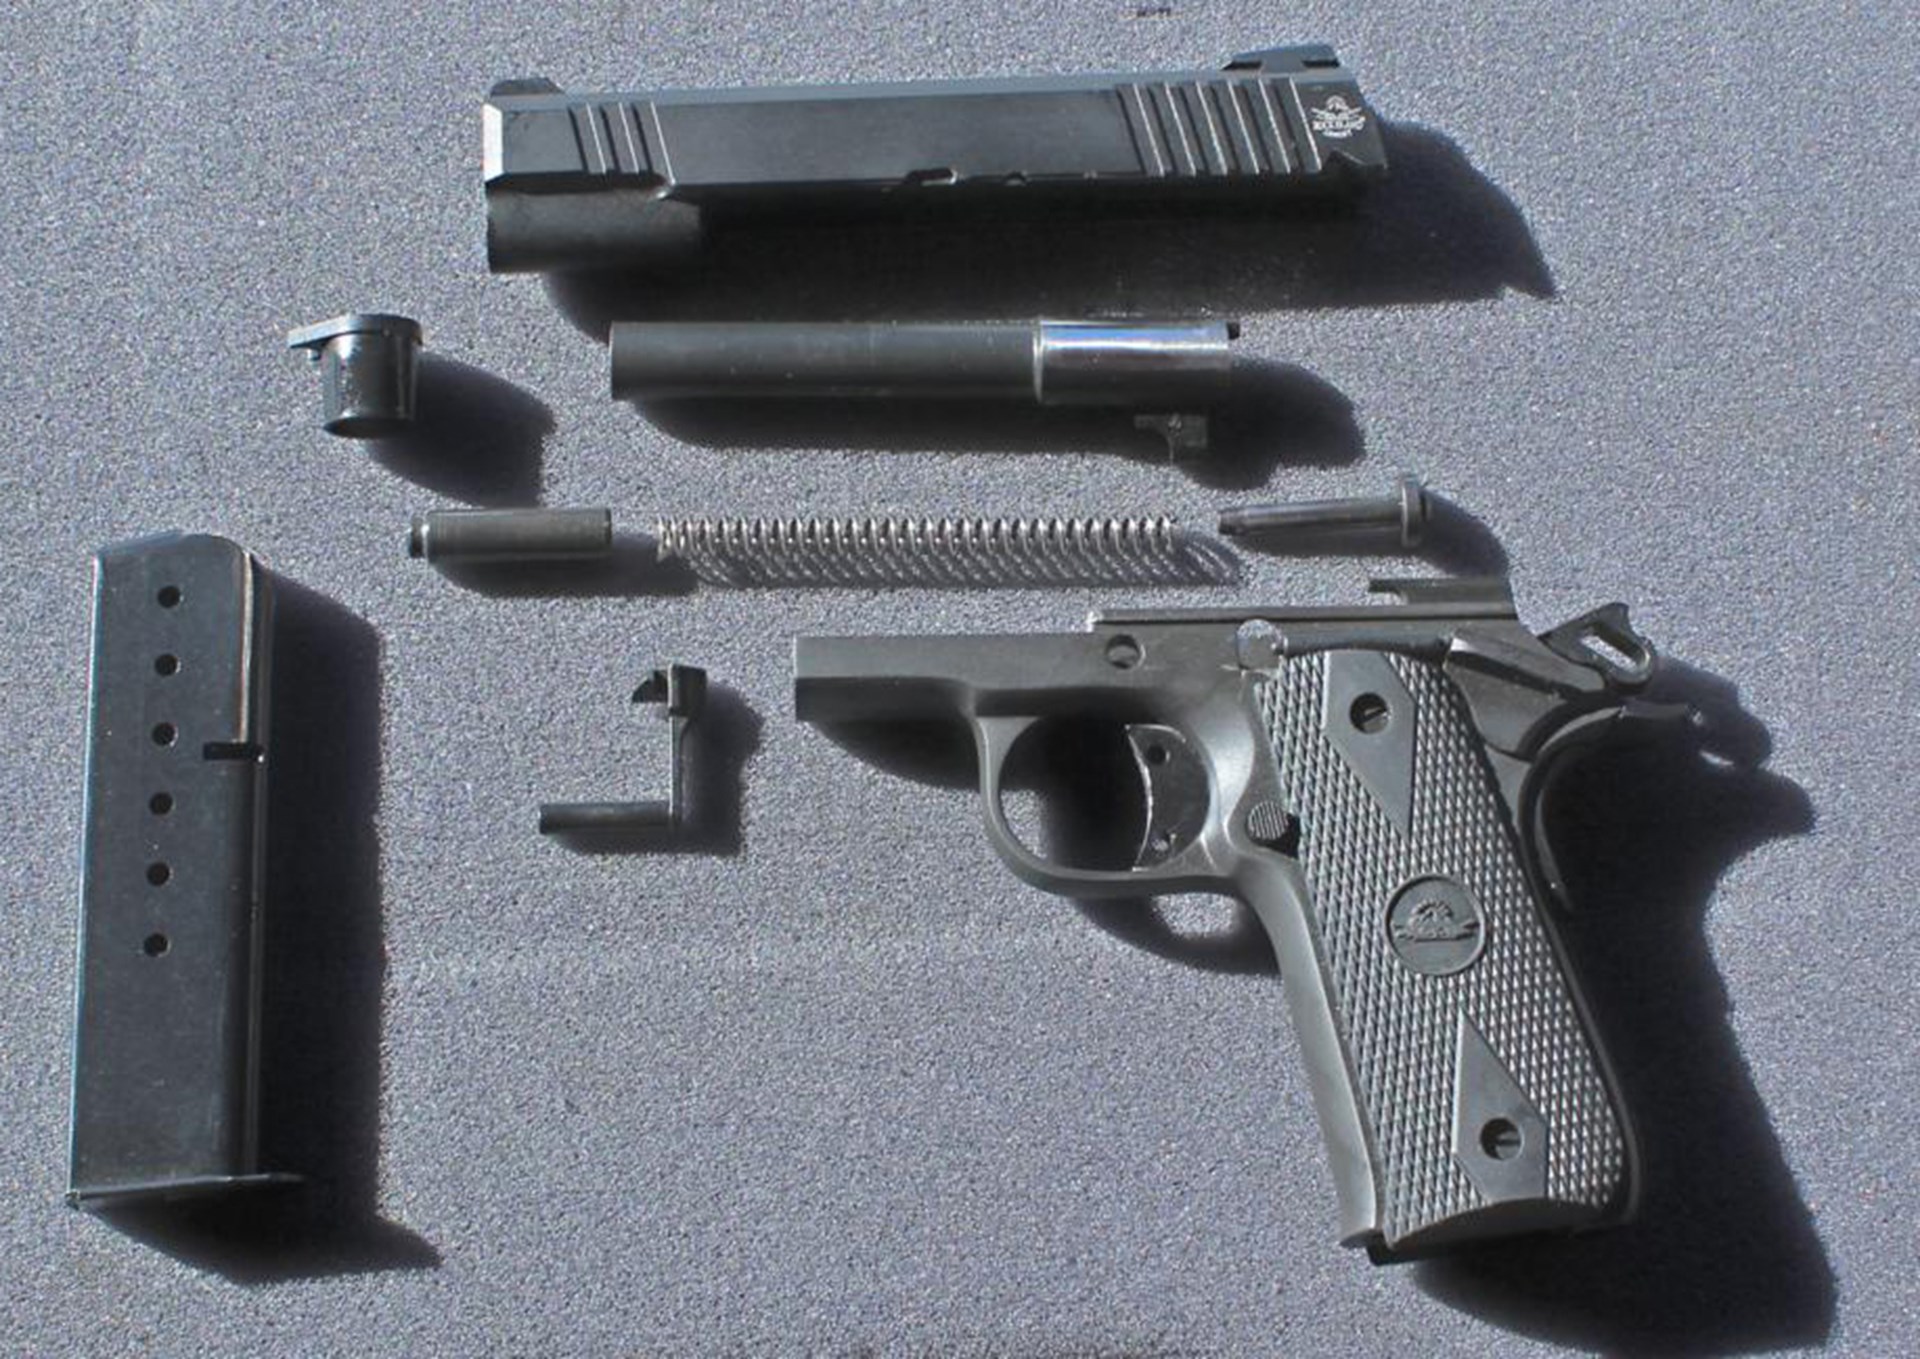 field-stripping procedure gun pistol parts disassembled